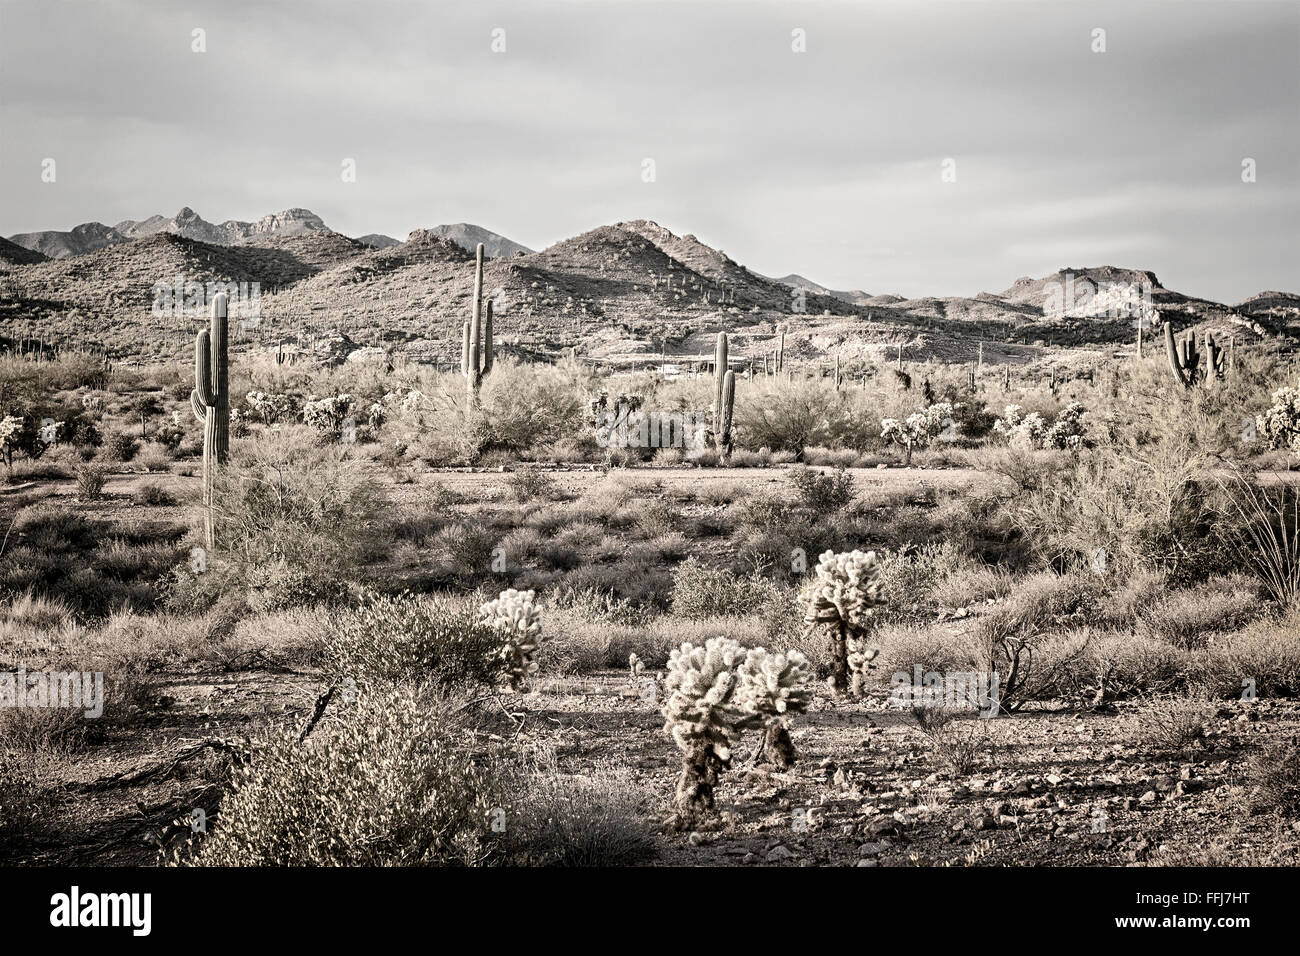 Zeigt ein Bild der Aberglaube Wüste in Arizona die robuste Detail einer trockenen Wildnis mit einem Saguaro-Kaktus Stockfoto